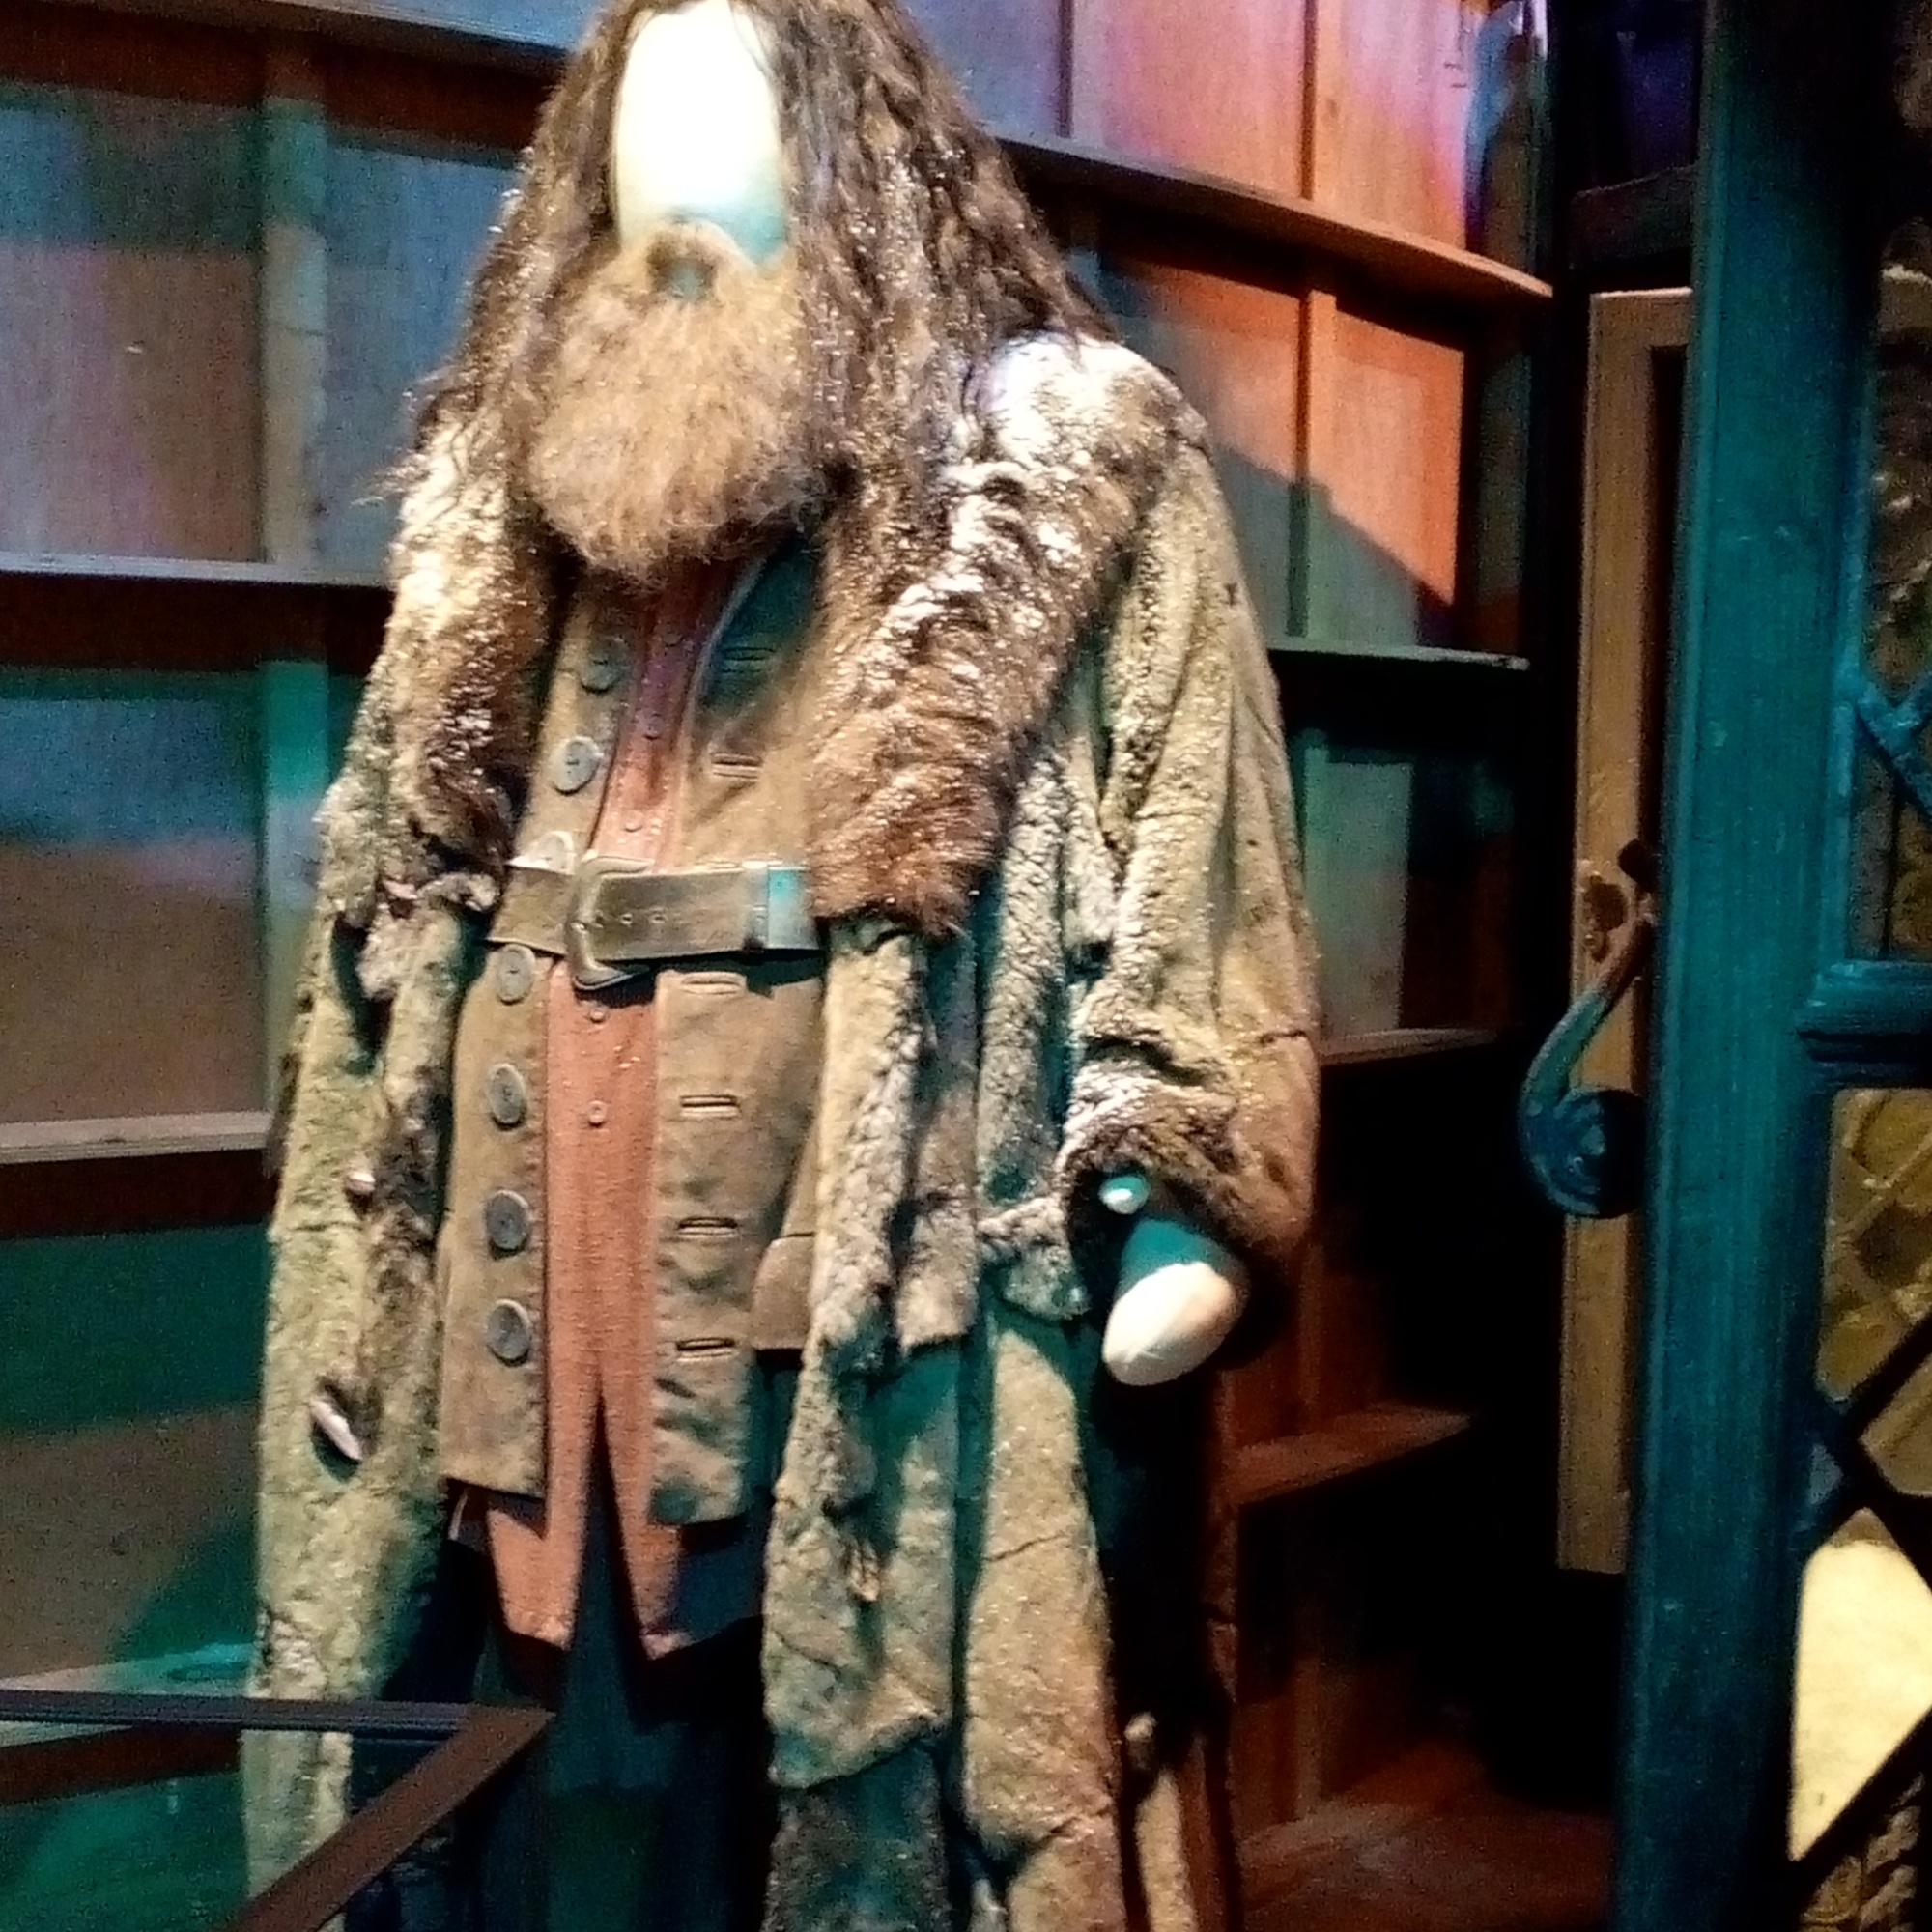 La Cabane de Hagrid - The Making of Harry Potter - Studio Tour London